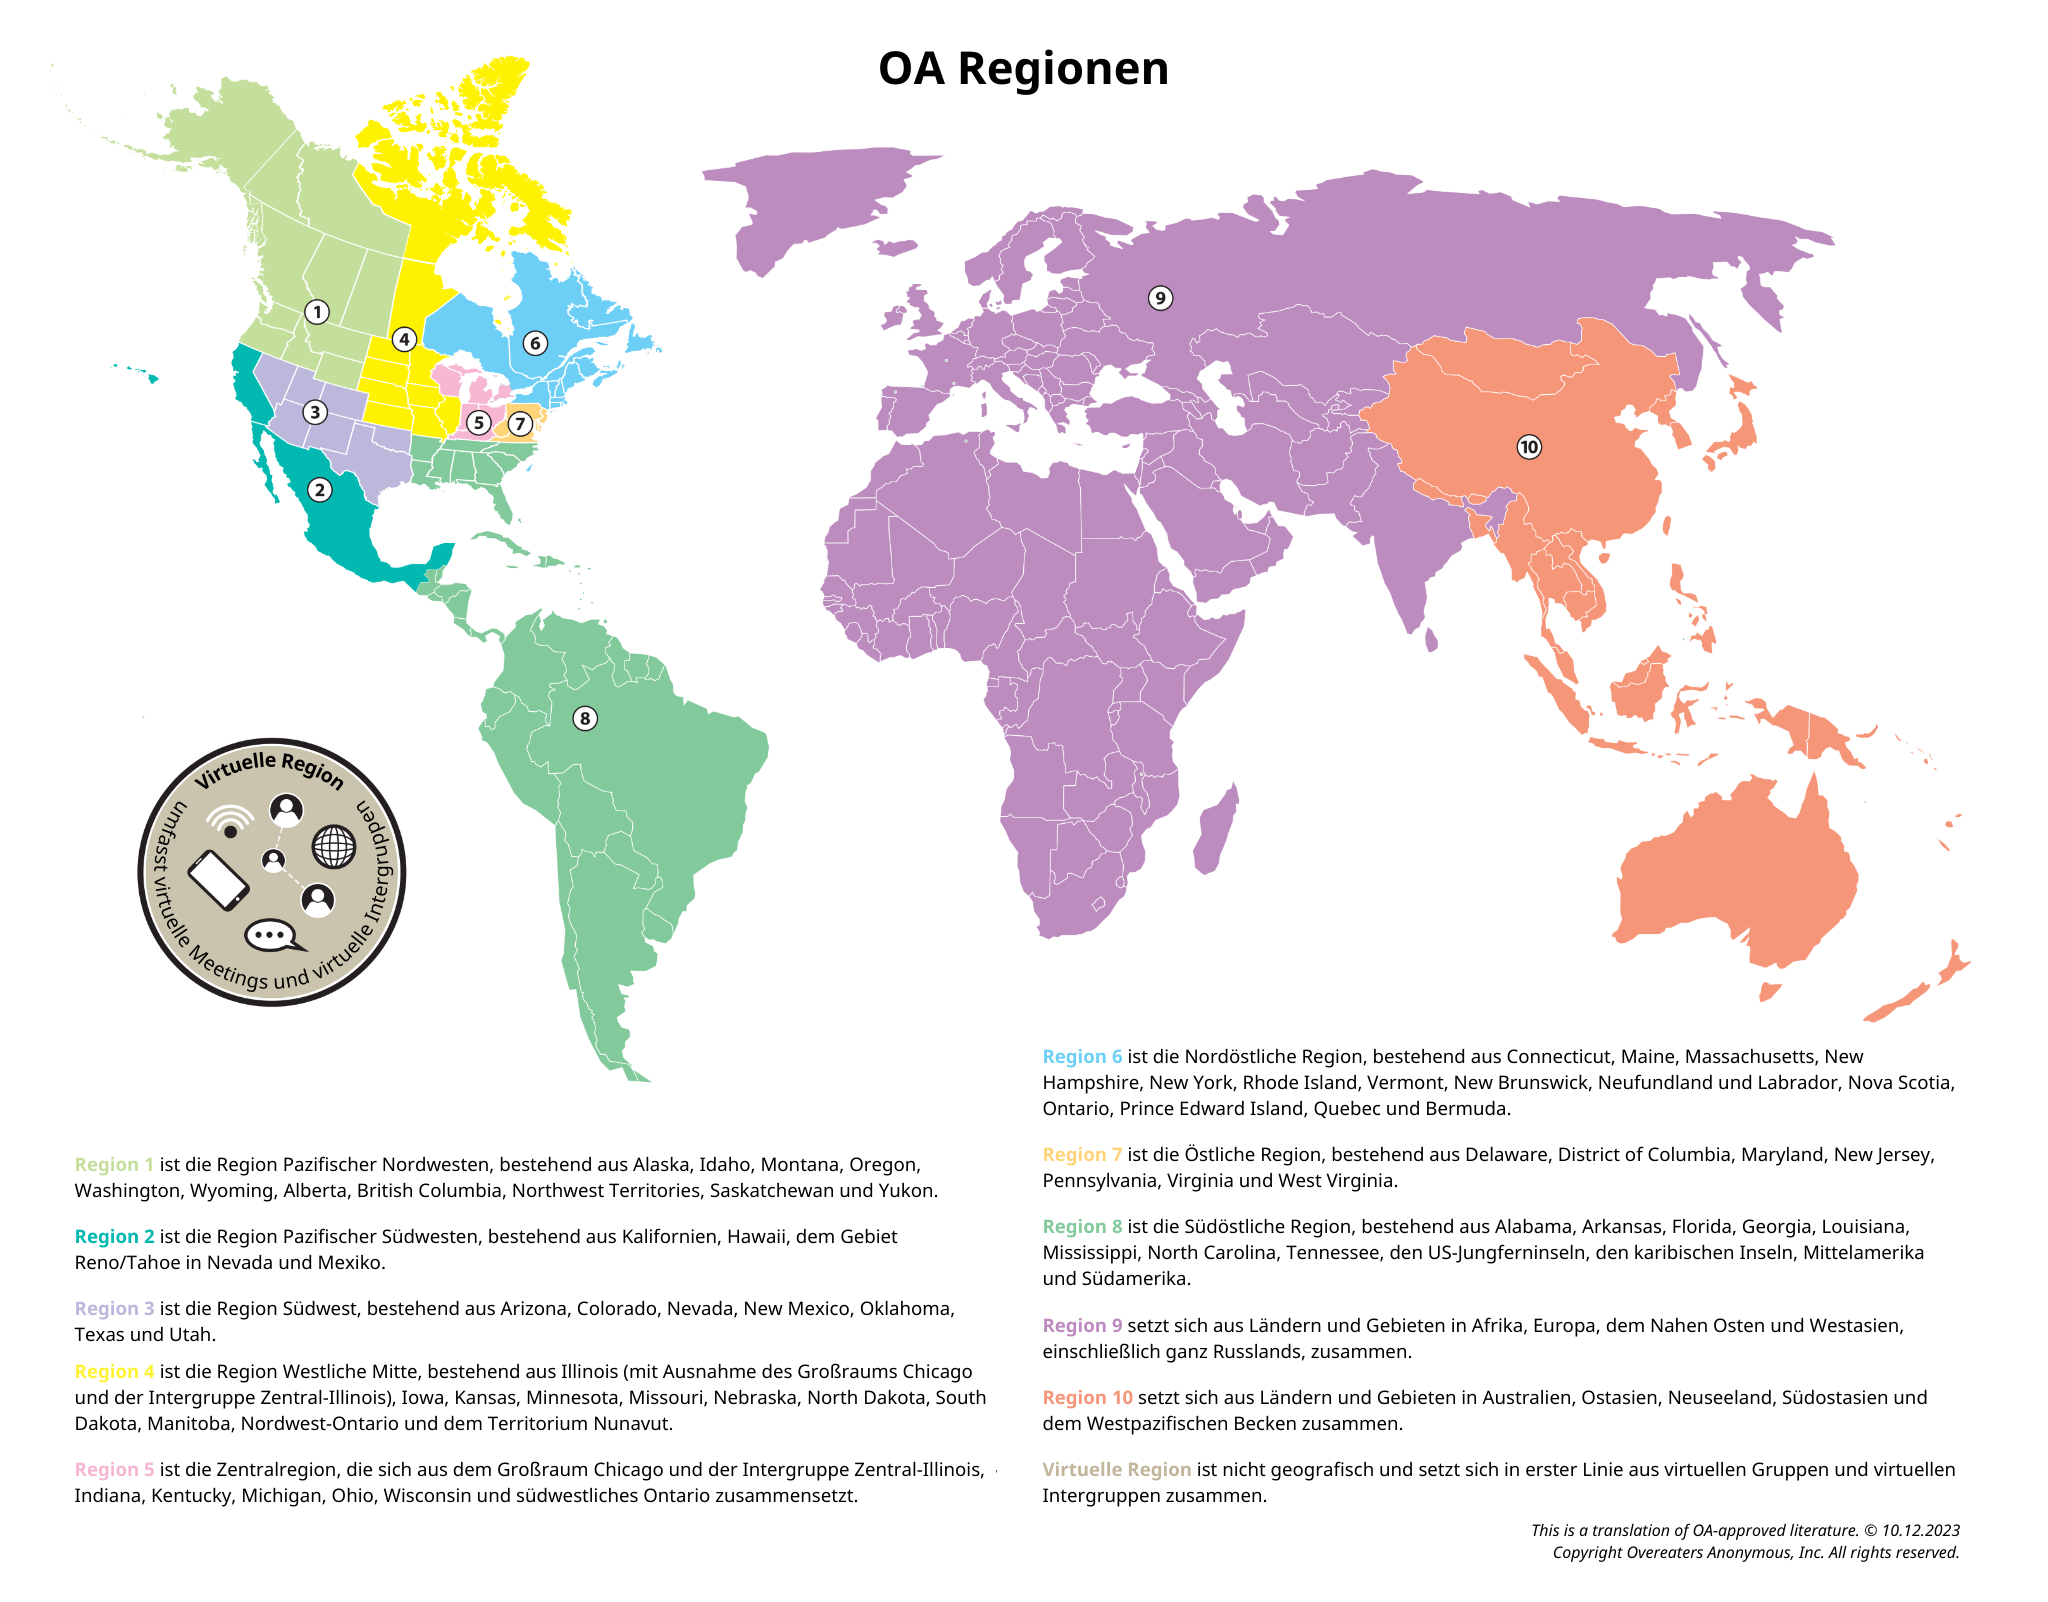 OA Regionen weltweit